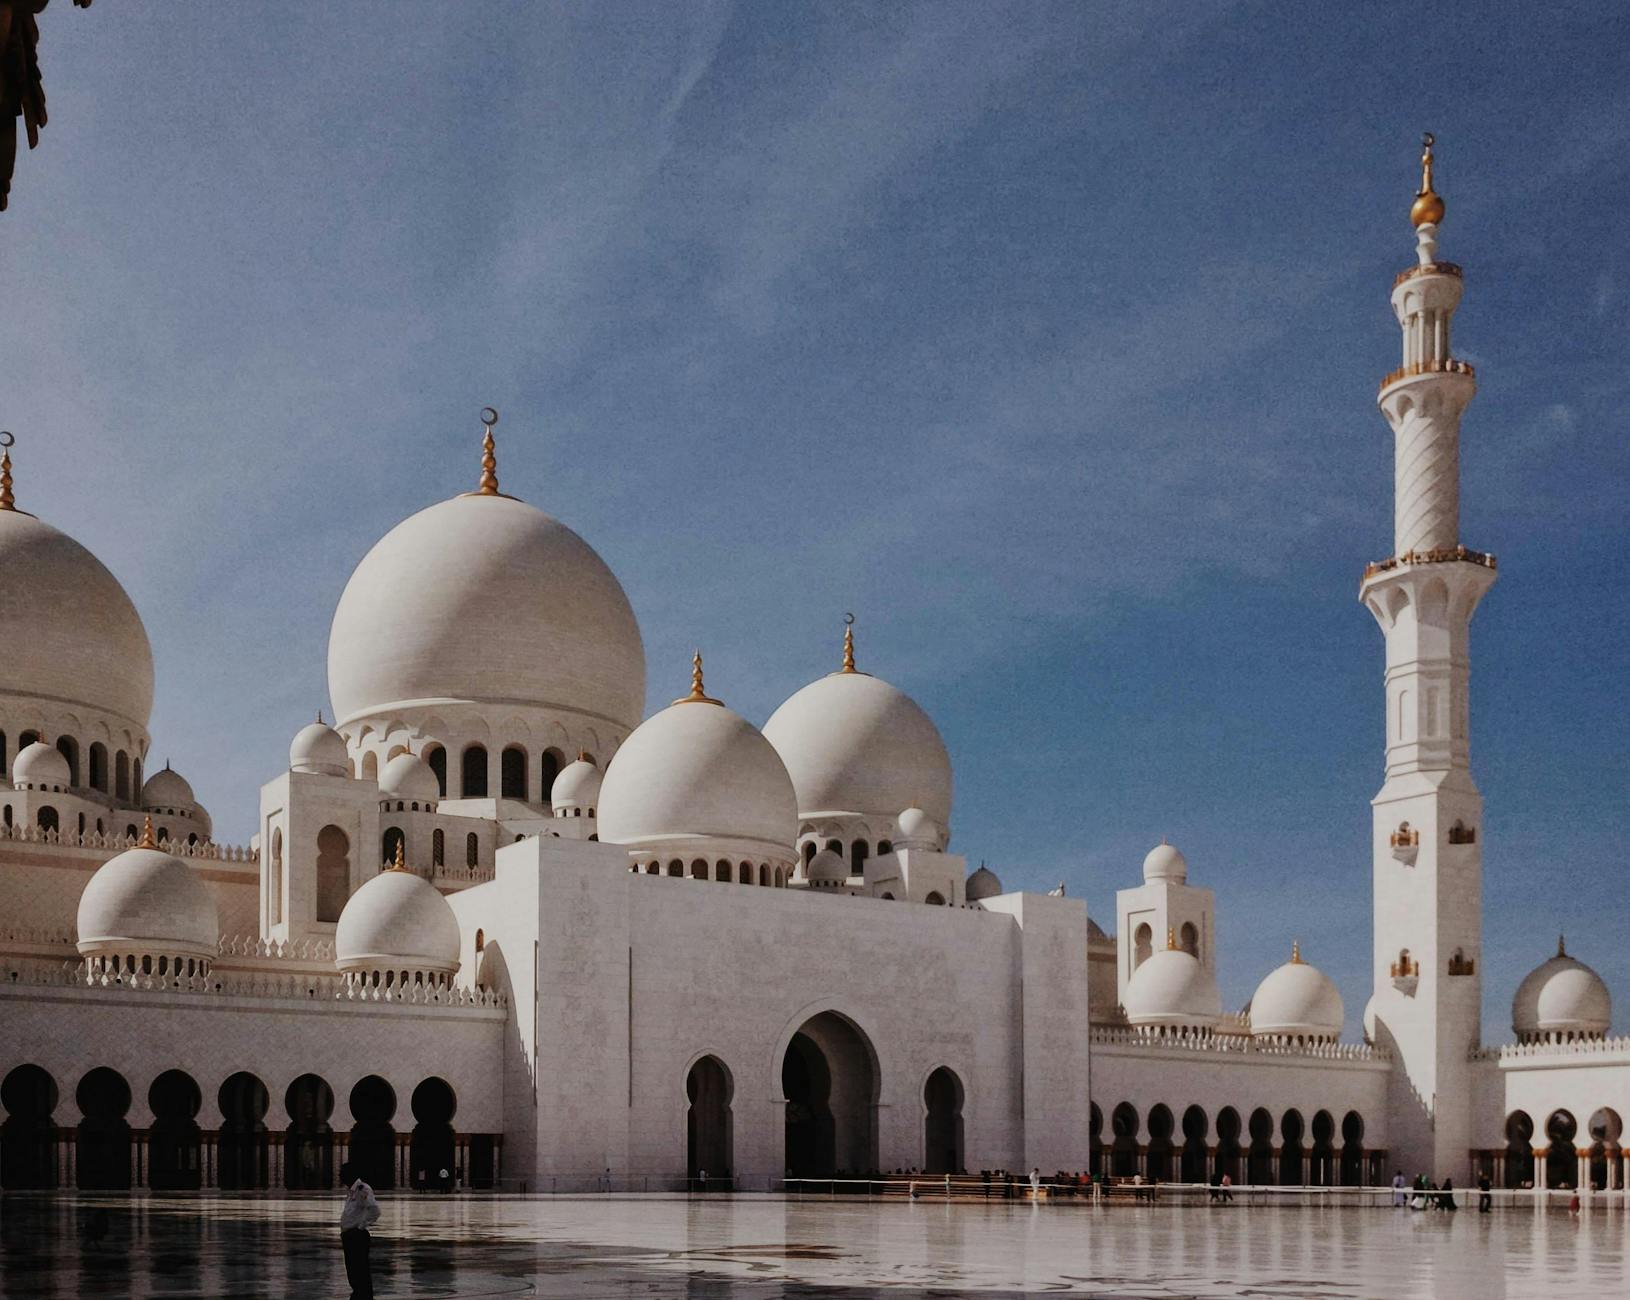 صور مساجد من حول العالم Pexels-photo-2028187